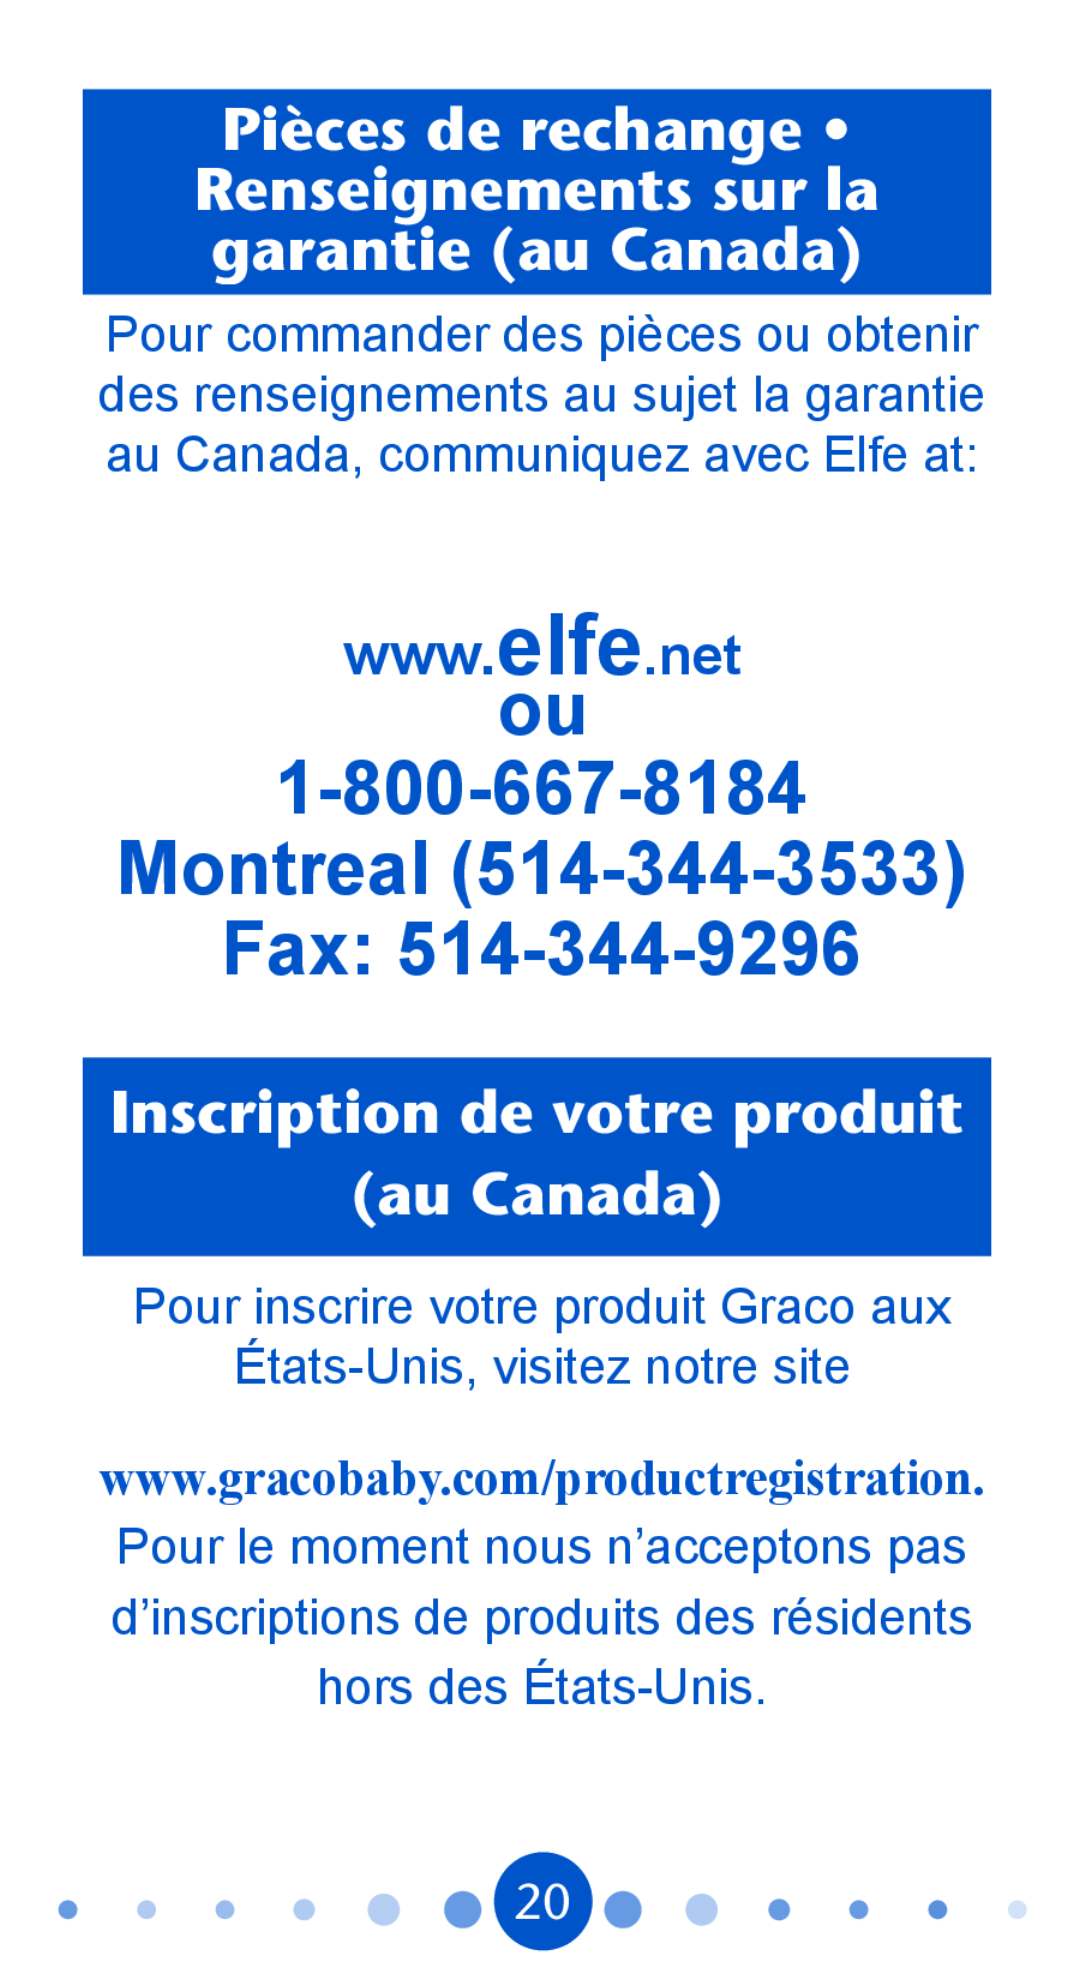 Graco PD104815A Pièces de rechange Renseignements sur la garantie au Canada, Inscription de votre produit au Canada 